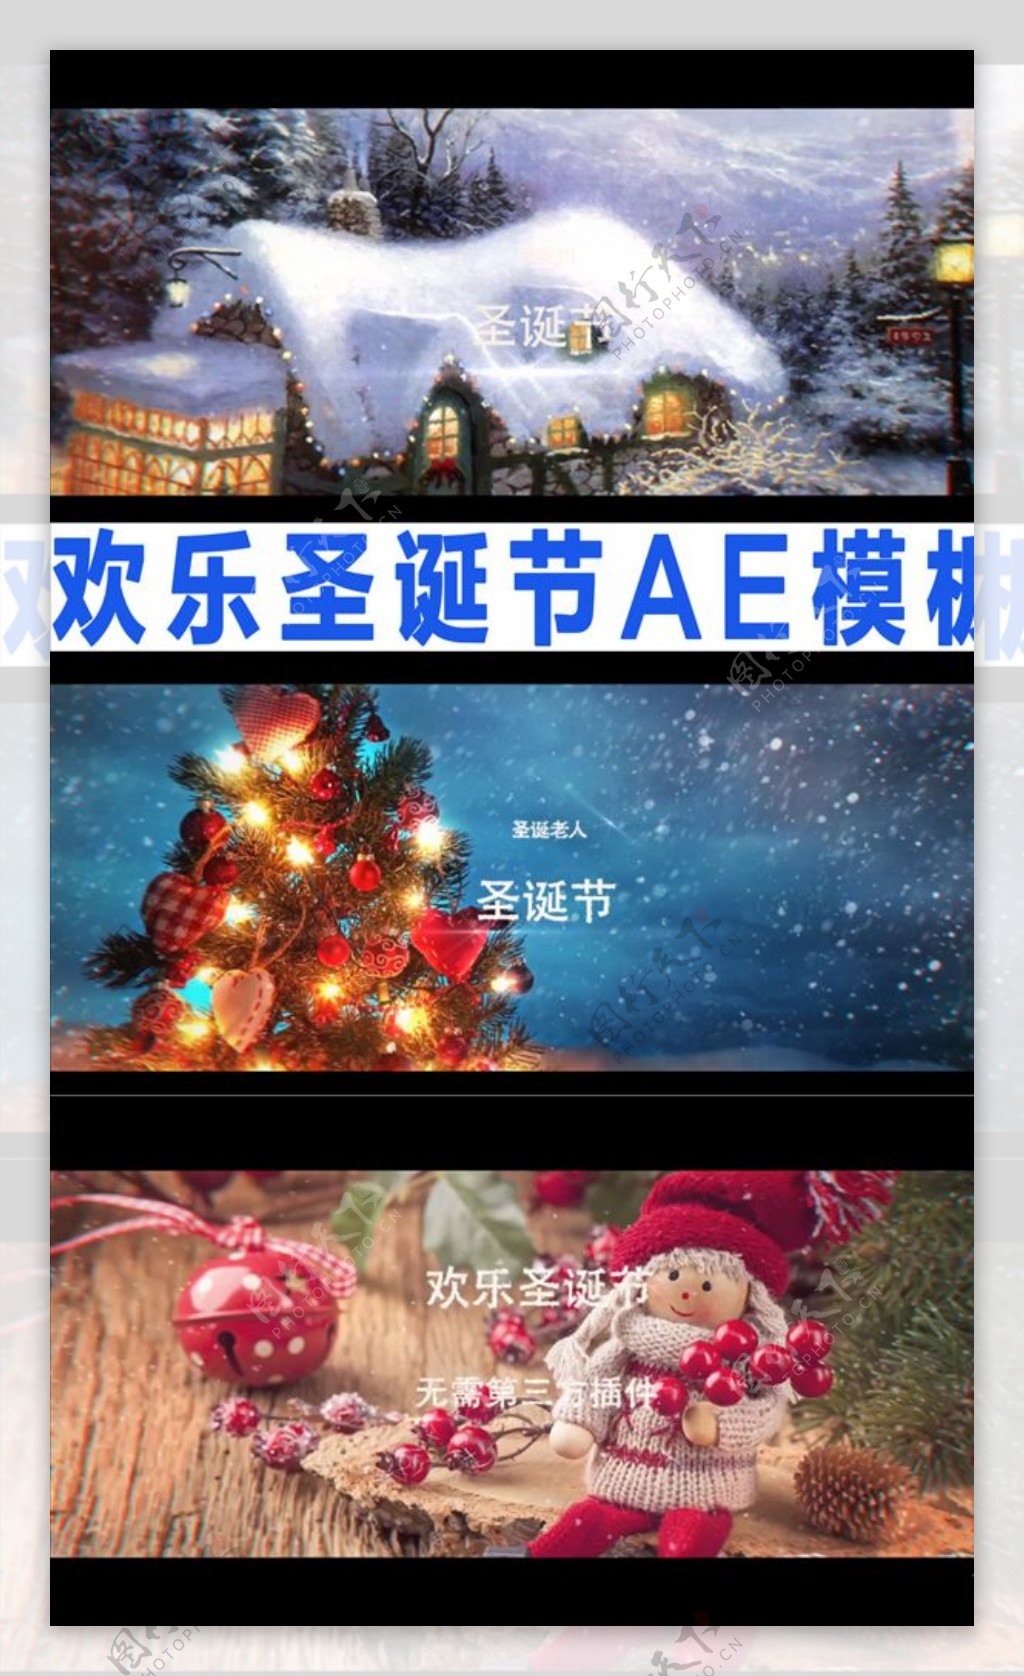 欢乐圣诞节AE模板